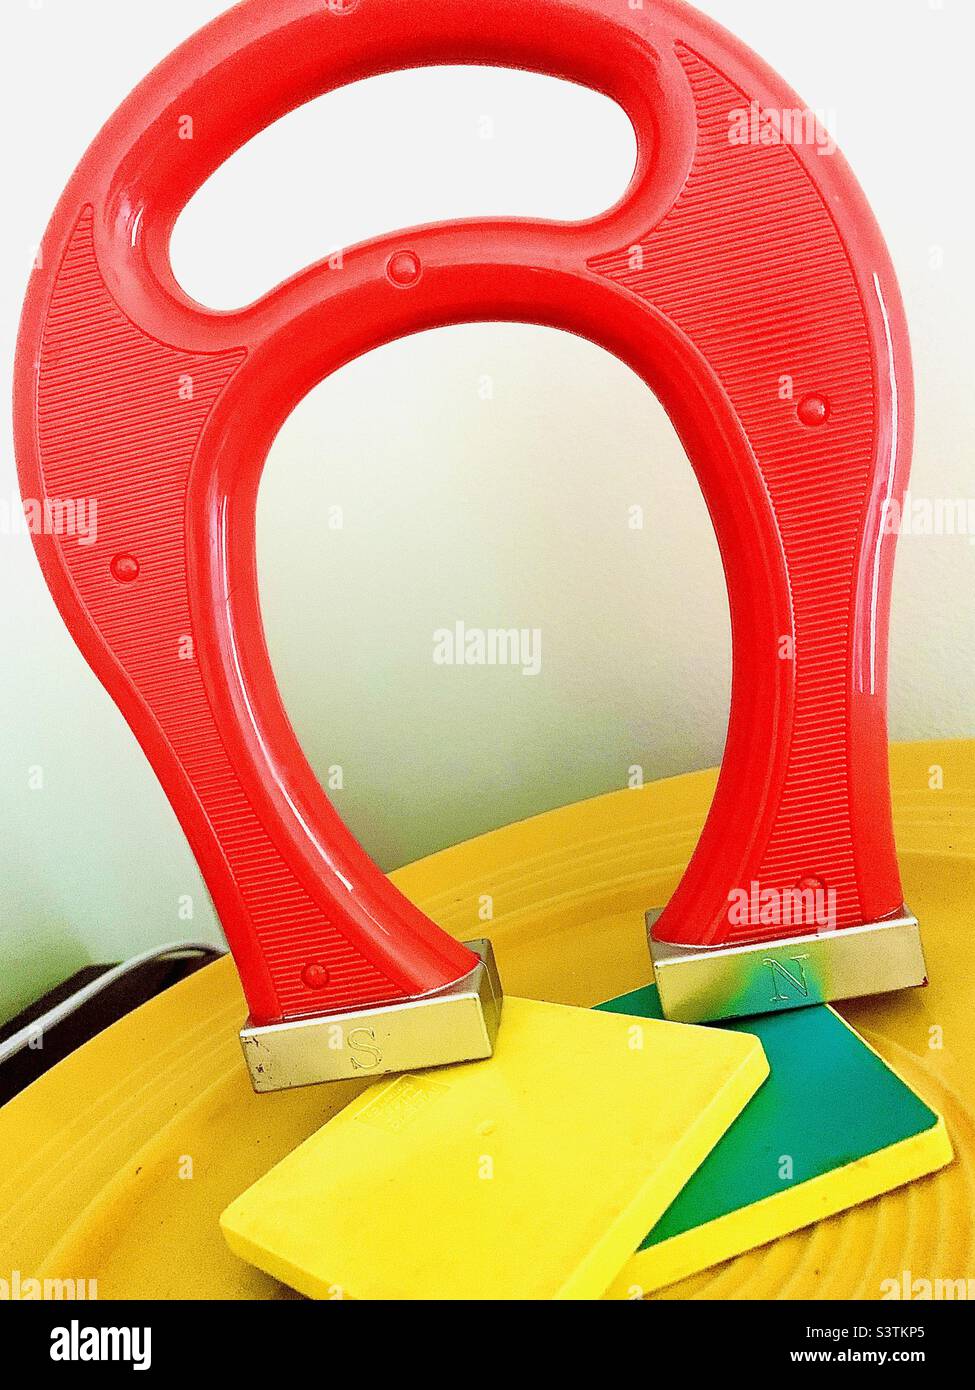 Oversized red horseshoe magnet on yellow tray Stock Photo